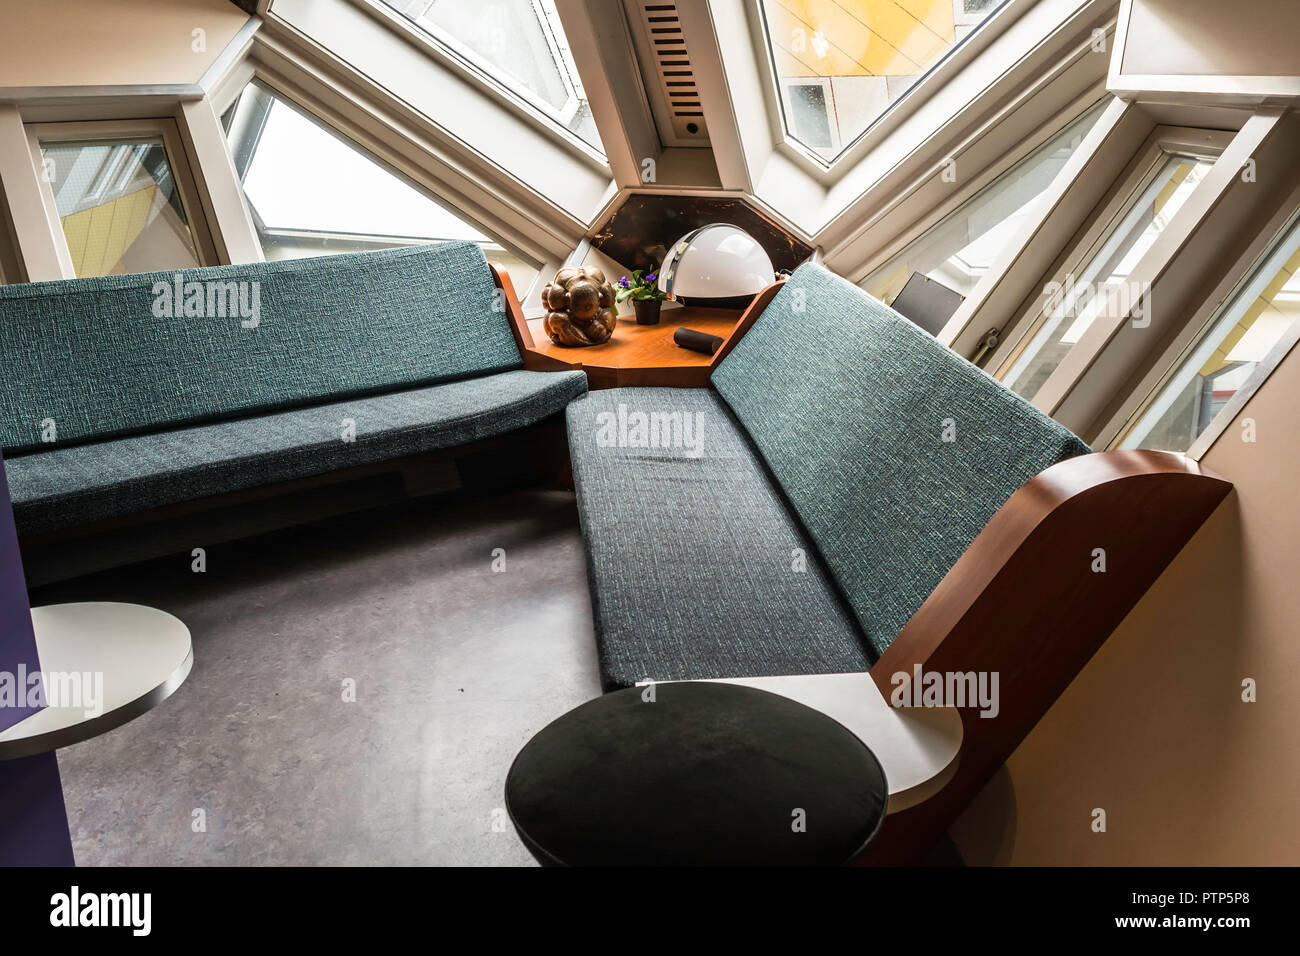 Rotterdam, Niederlande - 22. Mai 2018: Wohnzimmer in der Kijk-Kubus (Show-Cube) - möblierte Museum Haus, das speziell für die Besucher errichtet Stockfoto